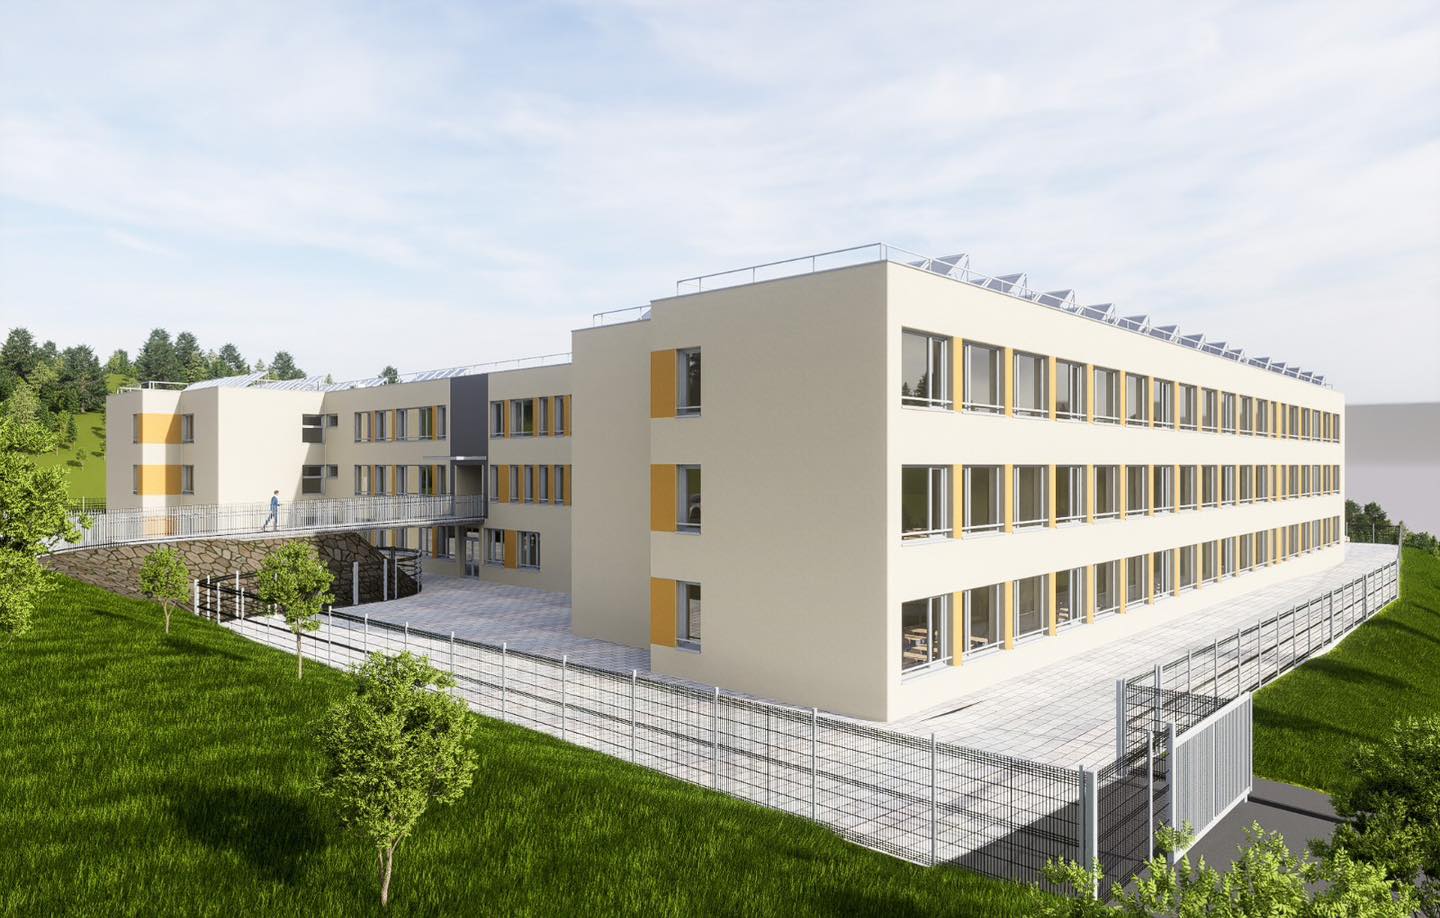 Școala „Dumitru Tăuțan” din Florești va fi modernizată și extinsă cu 7 clase noi. FOTO: Facebook/ Bogdan Pivariu